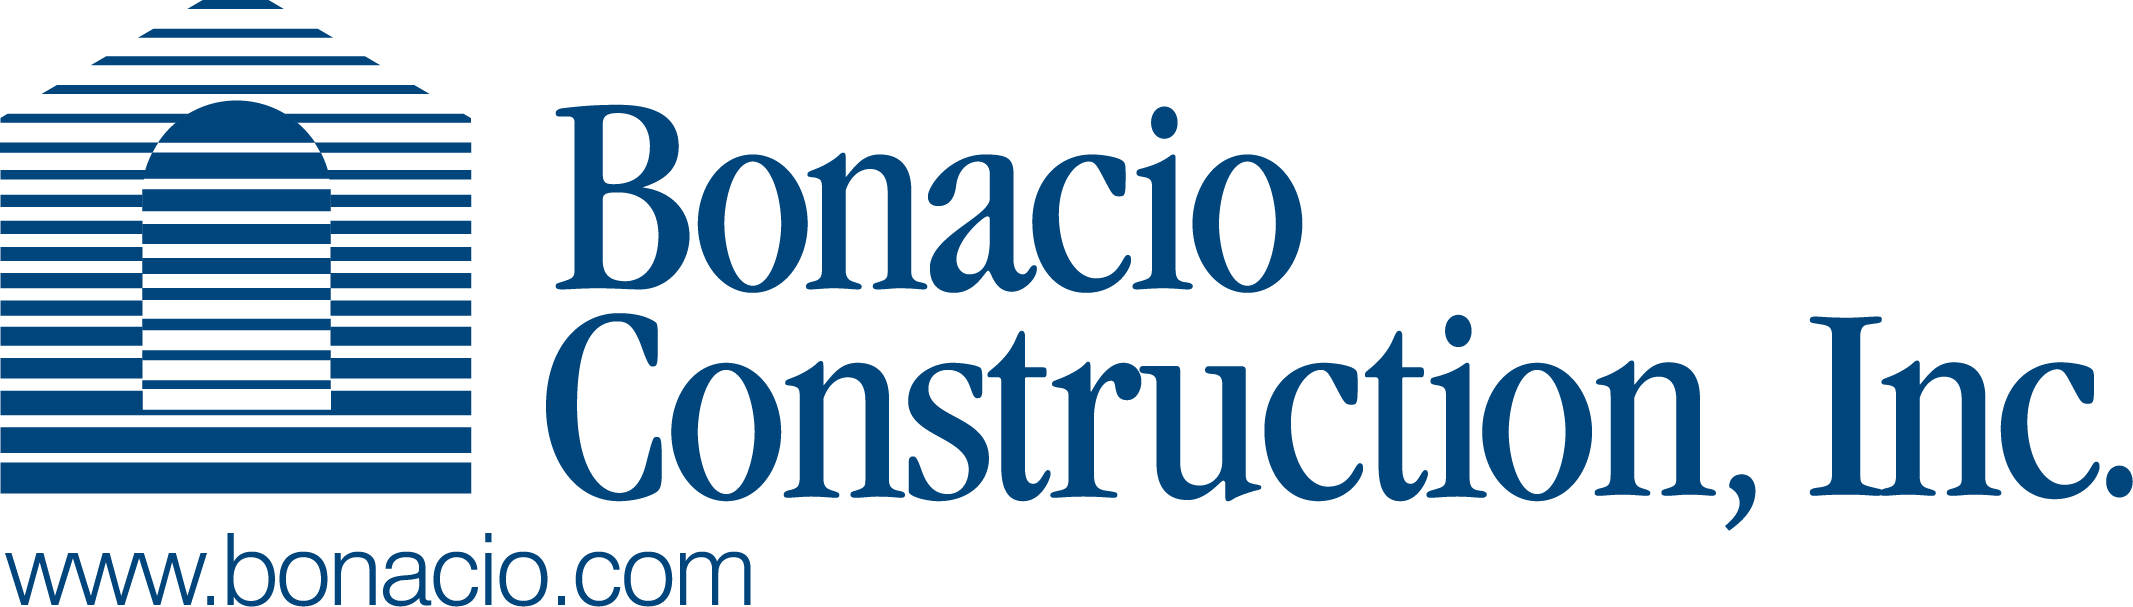 BONACIO CONSTRUCTION, INC. Company Logo